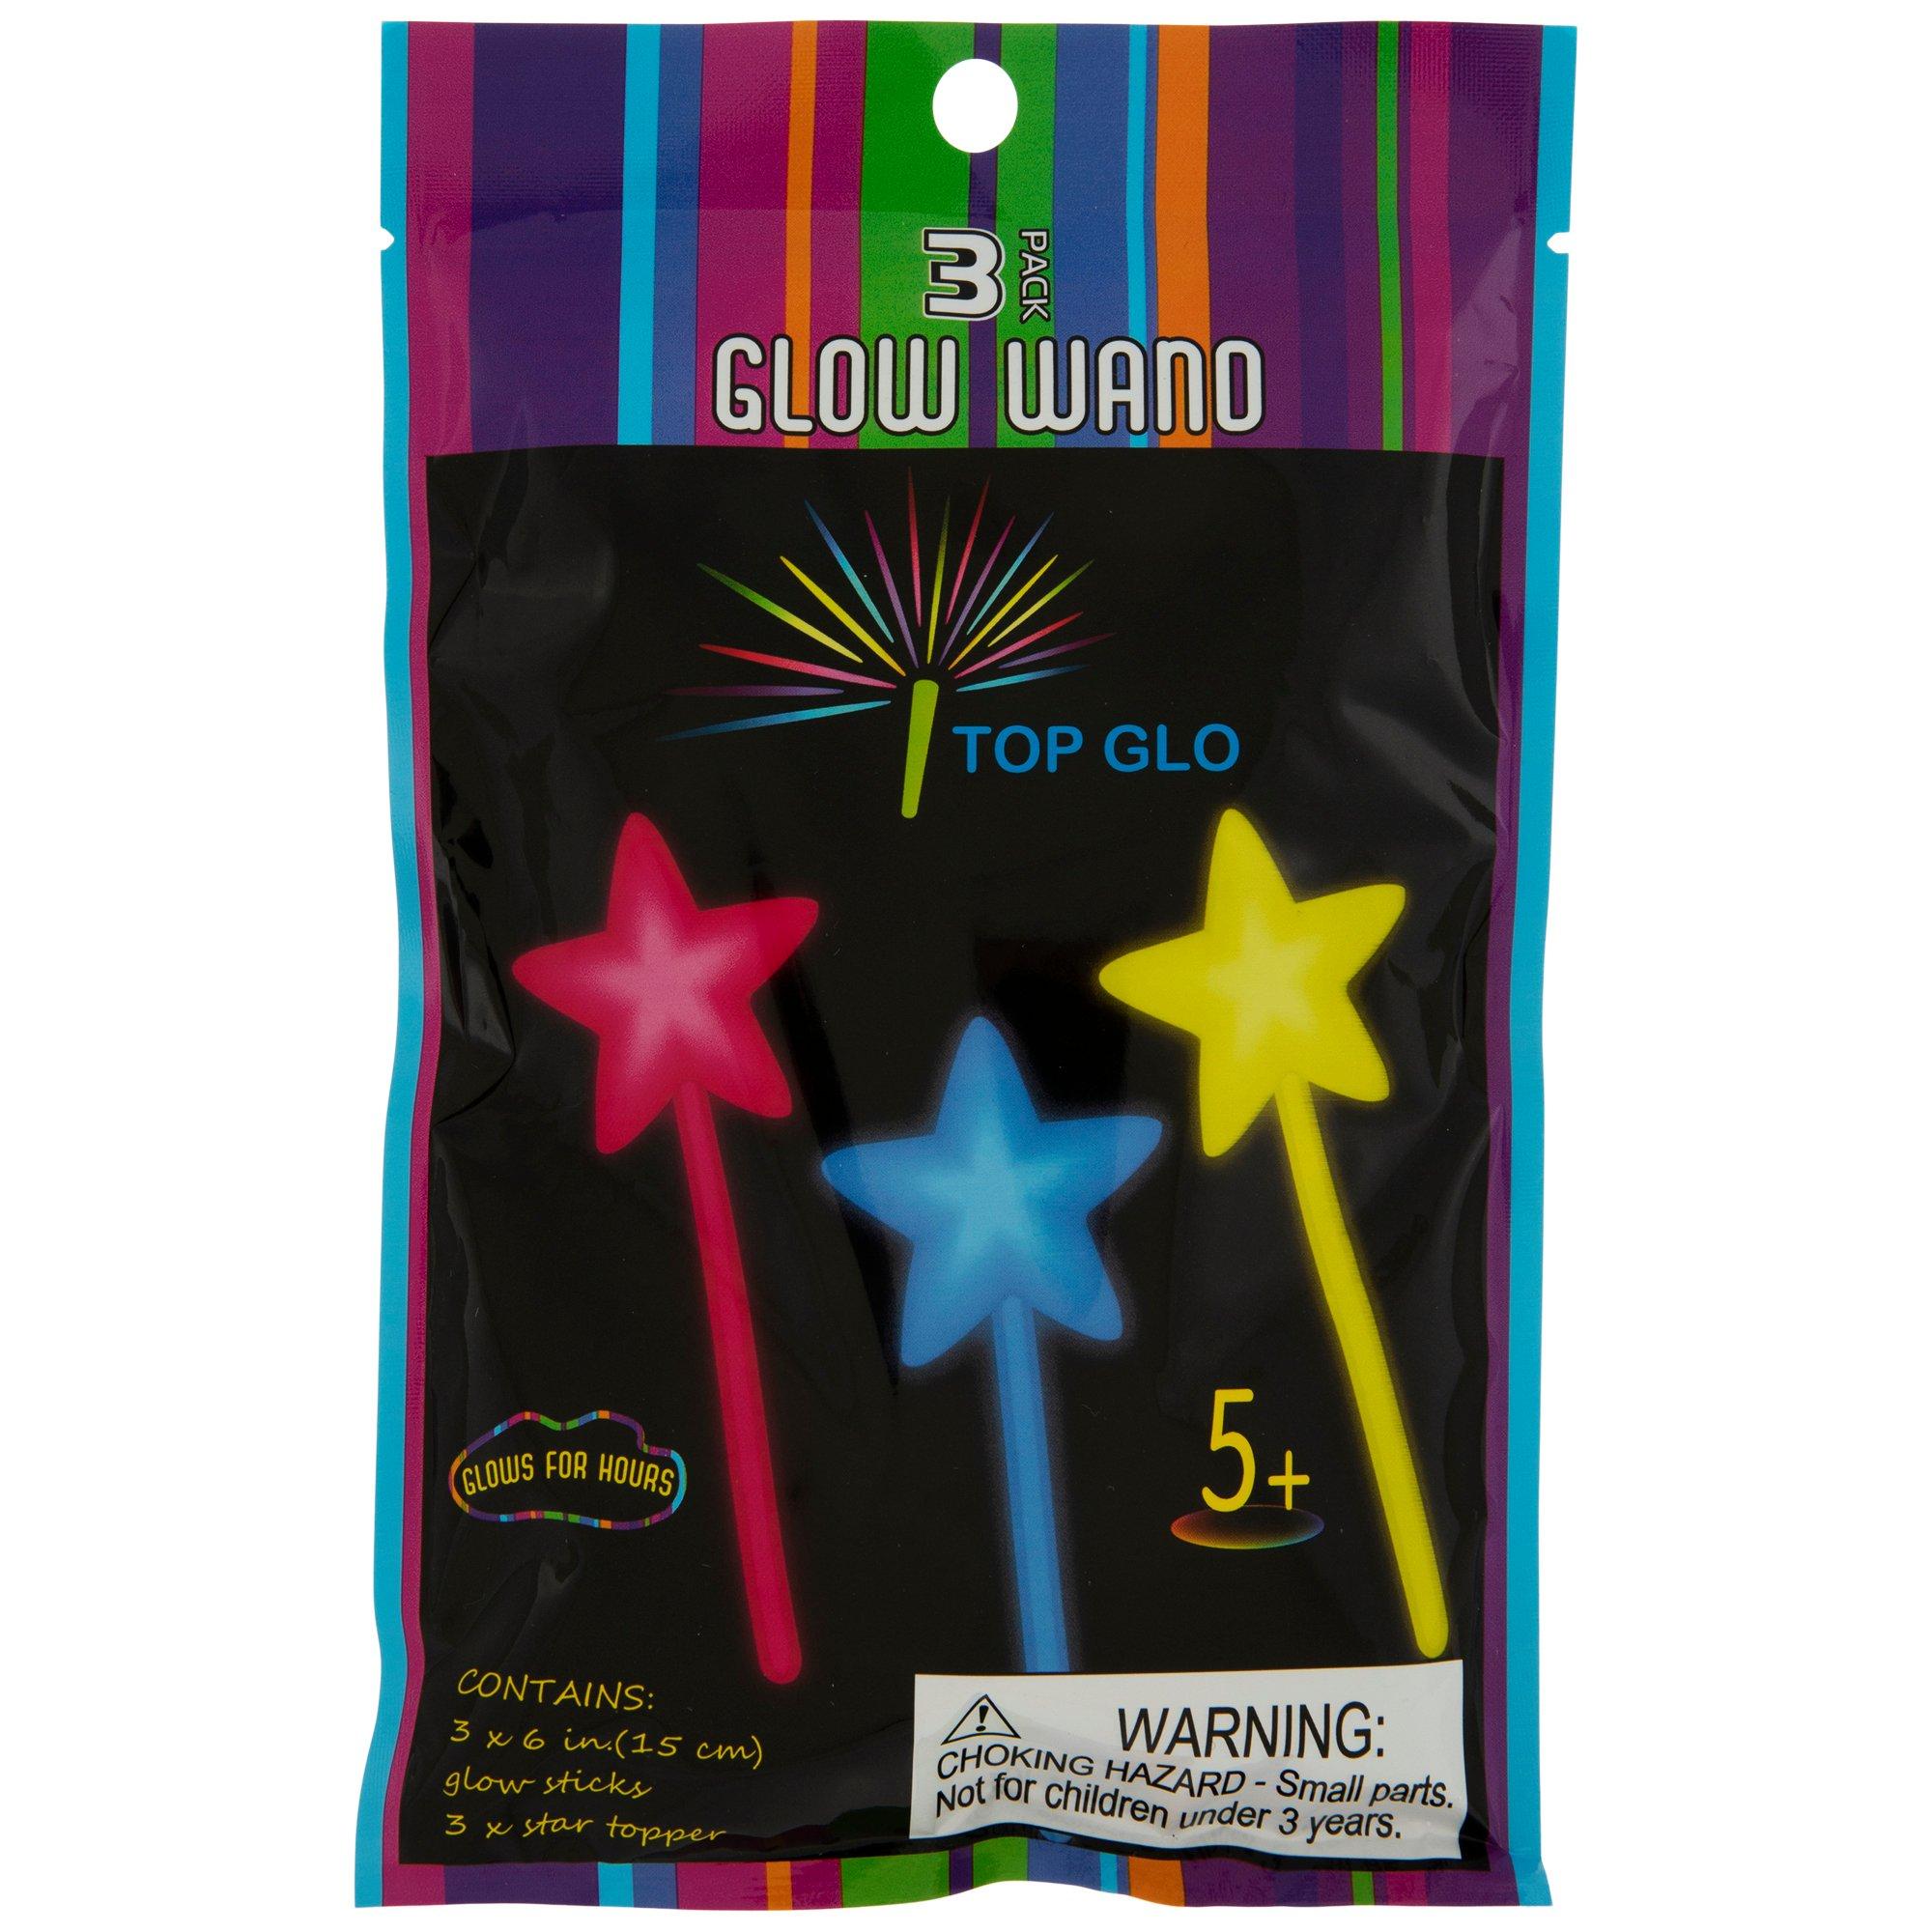 6 Glow Sticks - Glo Sticks 